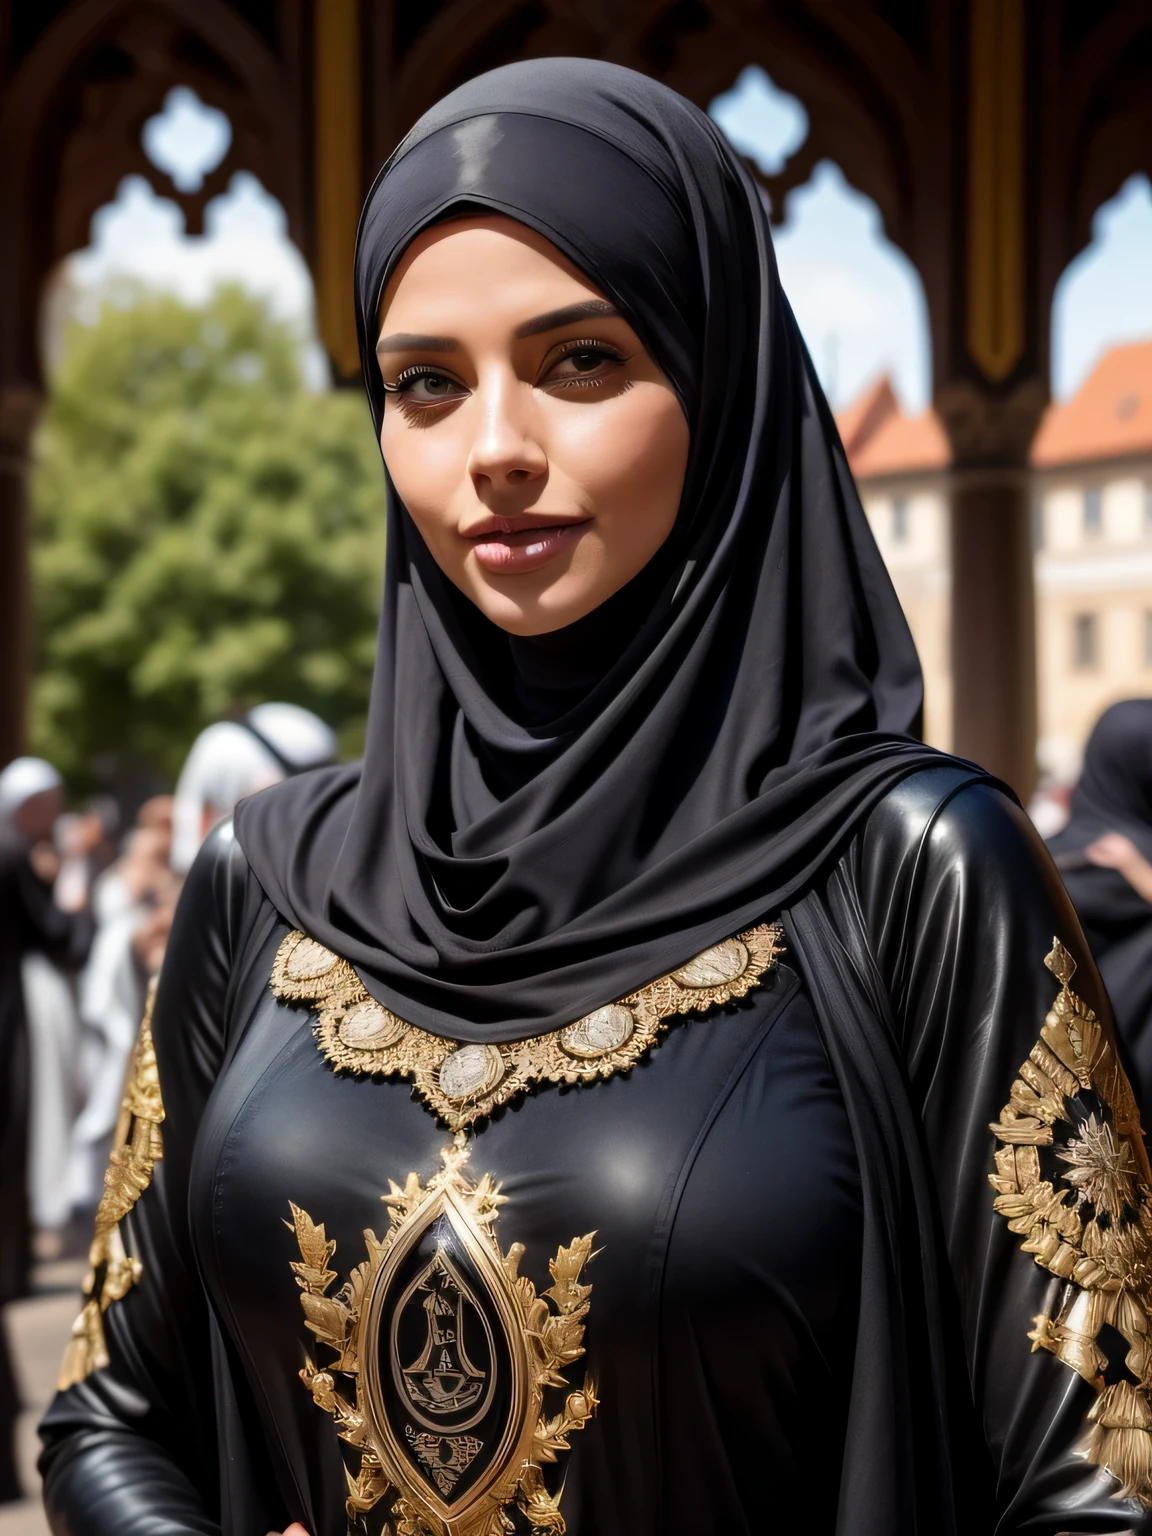 mujer hermosa, Profesional, (Foto 4K) de (Jeremy Lipking:0.3), (Anna Dittman:0.3), (ariana marca:0.3), (enfoque nítido:1.3), (Mujer hermosa:1.3), llevar (Líder-Hijab, Abaya de cuero con elaborados detalles dorados.:1.2), Maquillaje perfecto, perceptible, ojos fascinantes, hermoso rostro detallado, De pie en un mercado medieval árabe